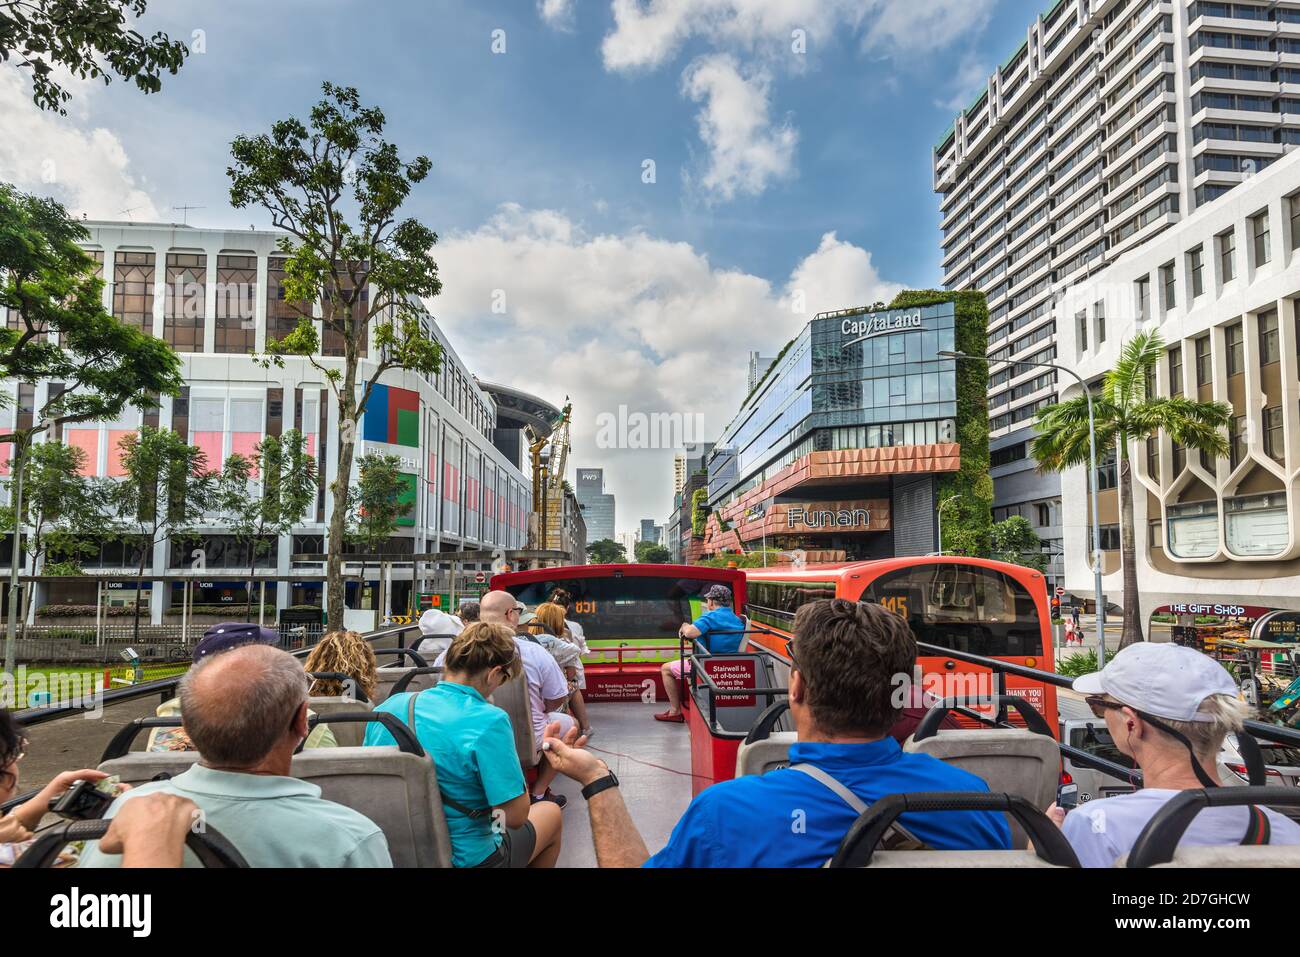 Singapur - 4. Dezember 2019: Die Leute schauen sich die Sehenswürdigkeiten von Singapur mit dem Hop-on-Hop-off-Bus an - gehen Sie entlang der North Bridge Straße in Singapur. Stockfoto